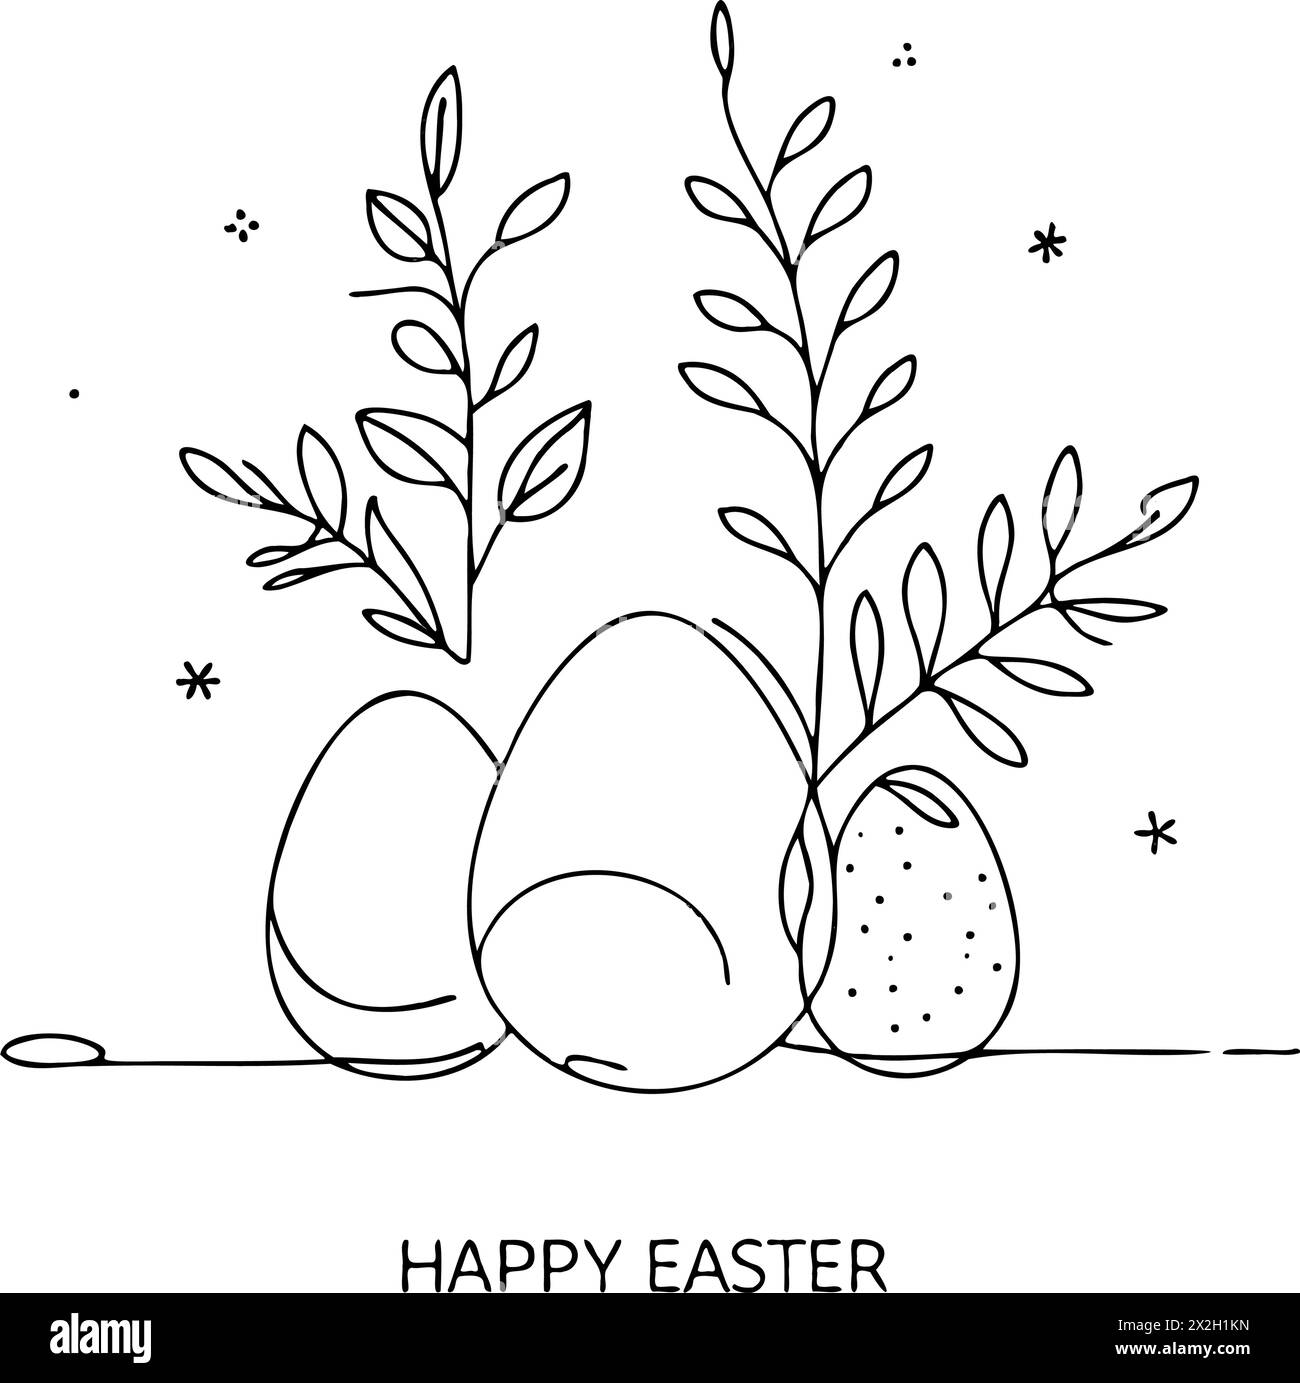 Disegno di tre uova e foglie con le parole Happy Easter scritte di seguito. Il disegno ha un'atmosfera tranquilla e gioiosa, con uova e foglie di pere Illustrazione Vettoriale